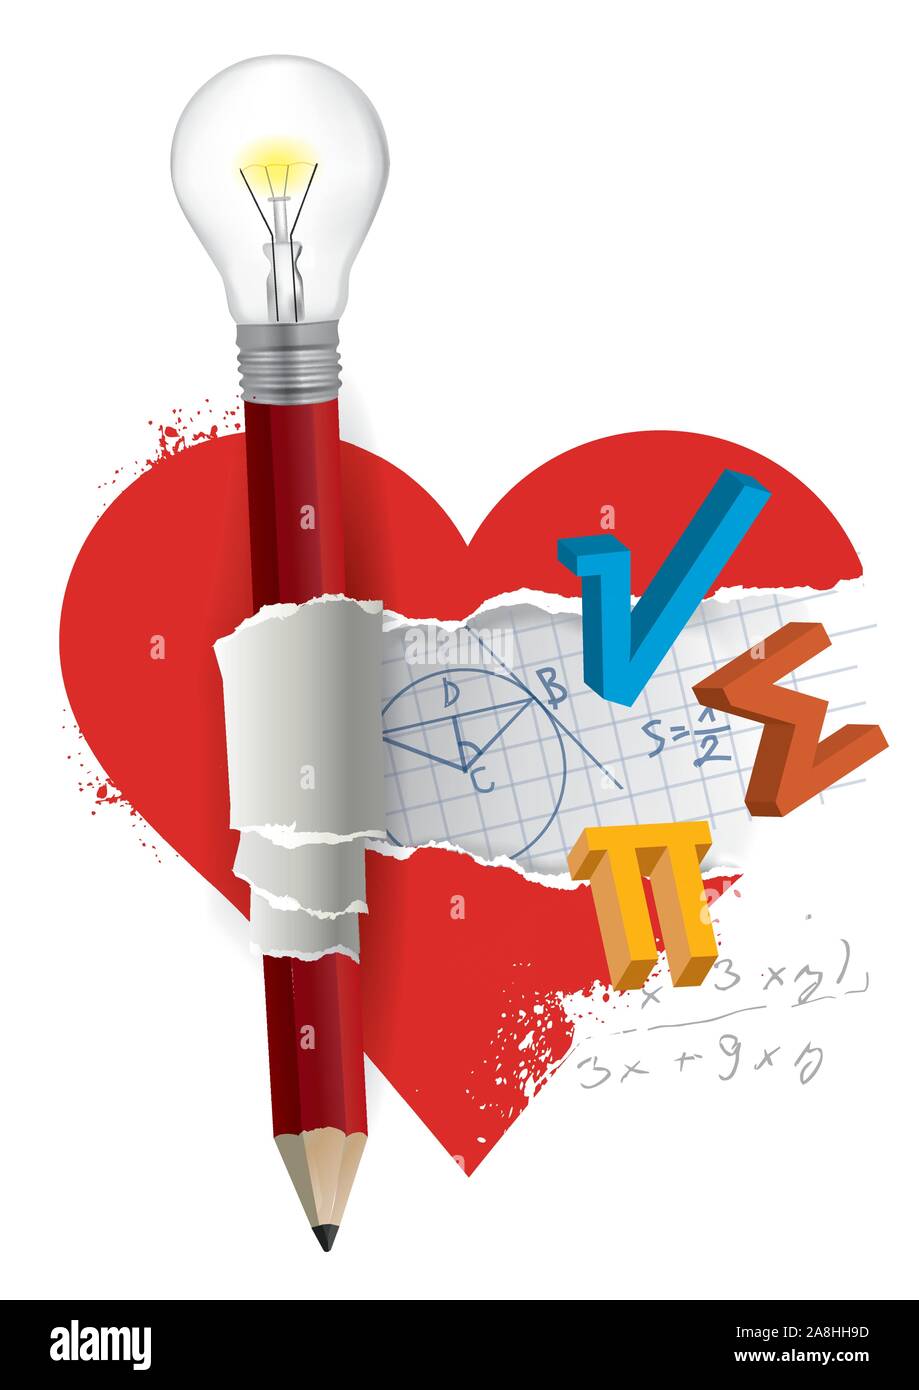 J'aime les mathématiques,concept mathématiques amusantes. Symboles mathématiques à l'intérieur du symbole coeur avec crayon avec ampoule. Vector disponibles. Illustration de Vecteur